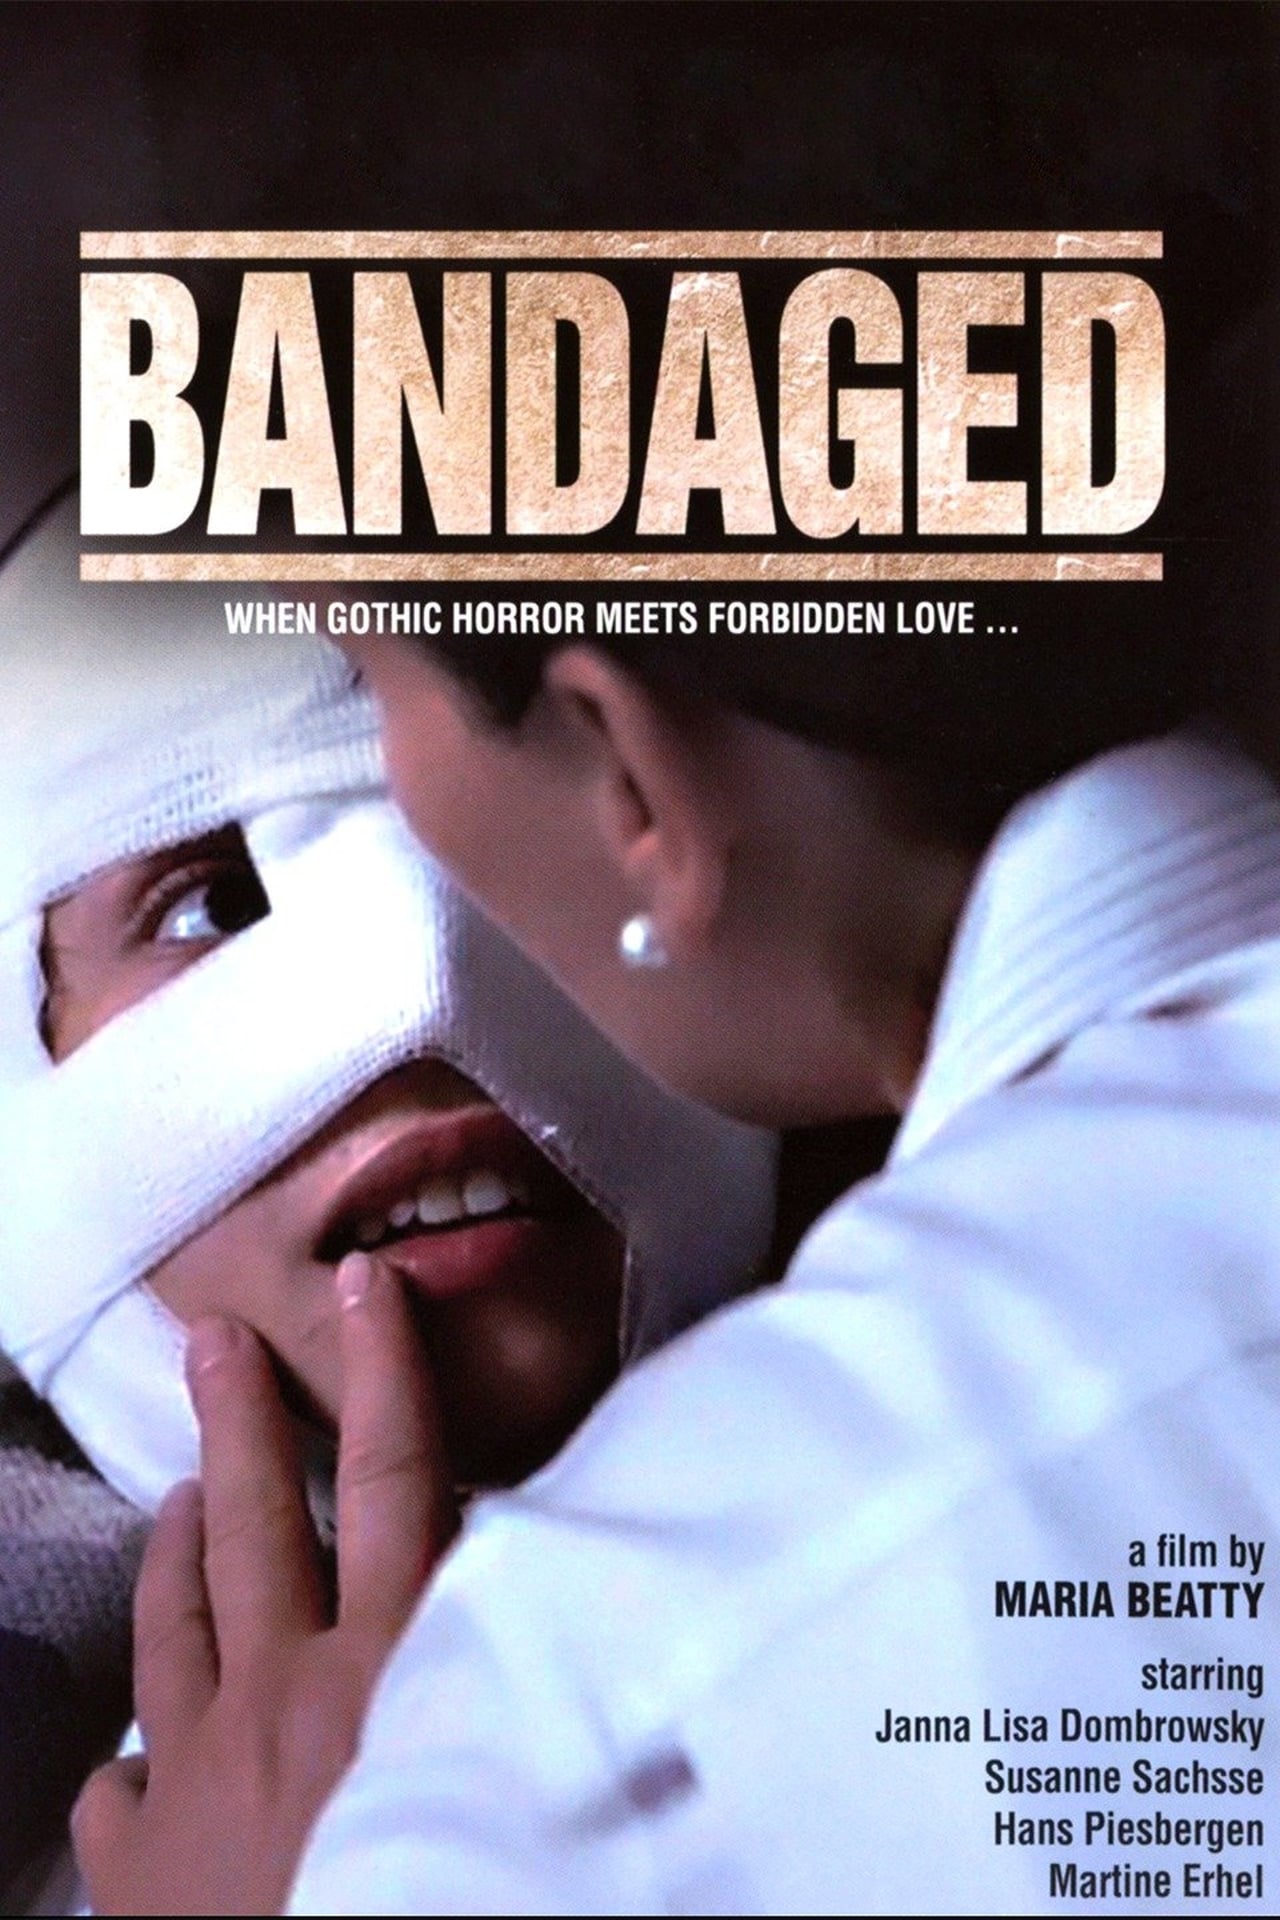 Bandaged